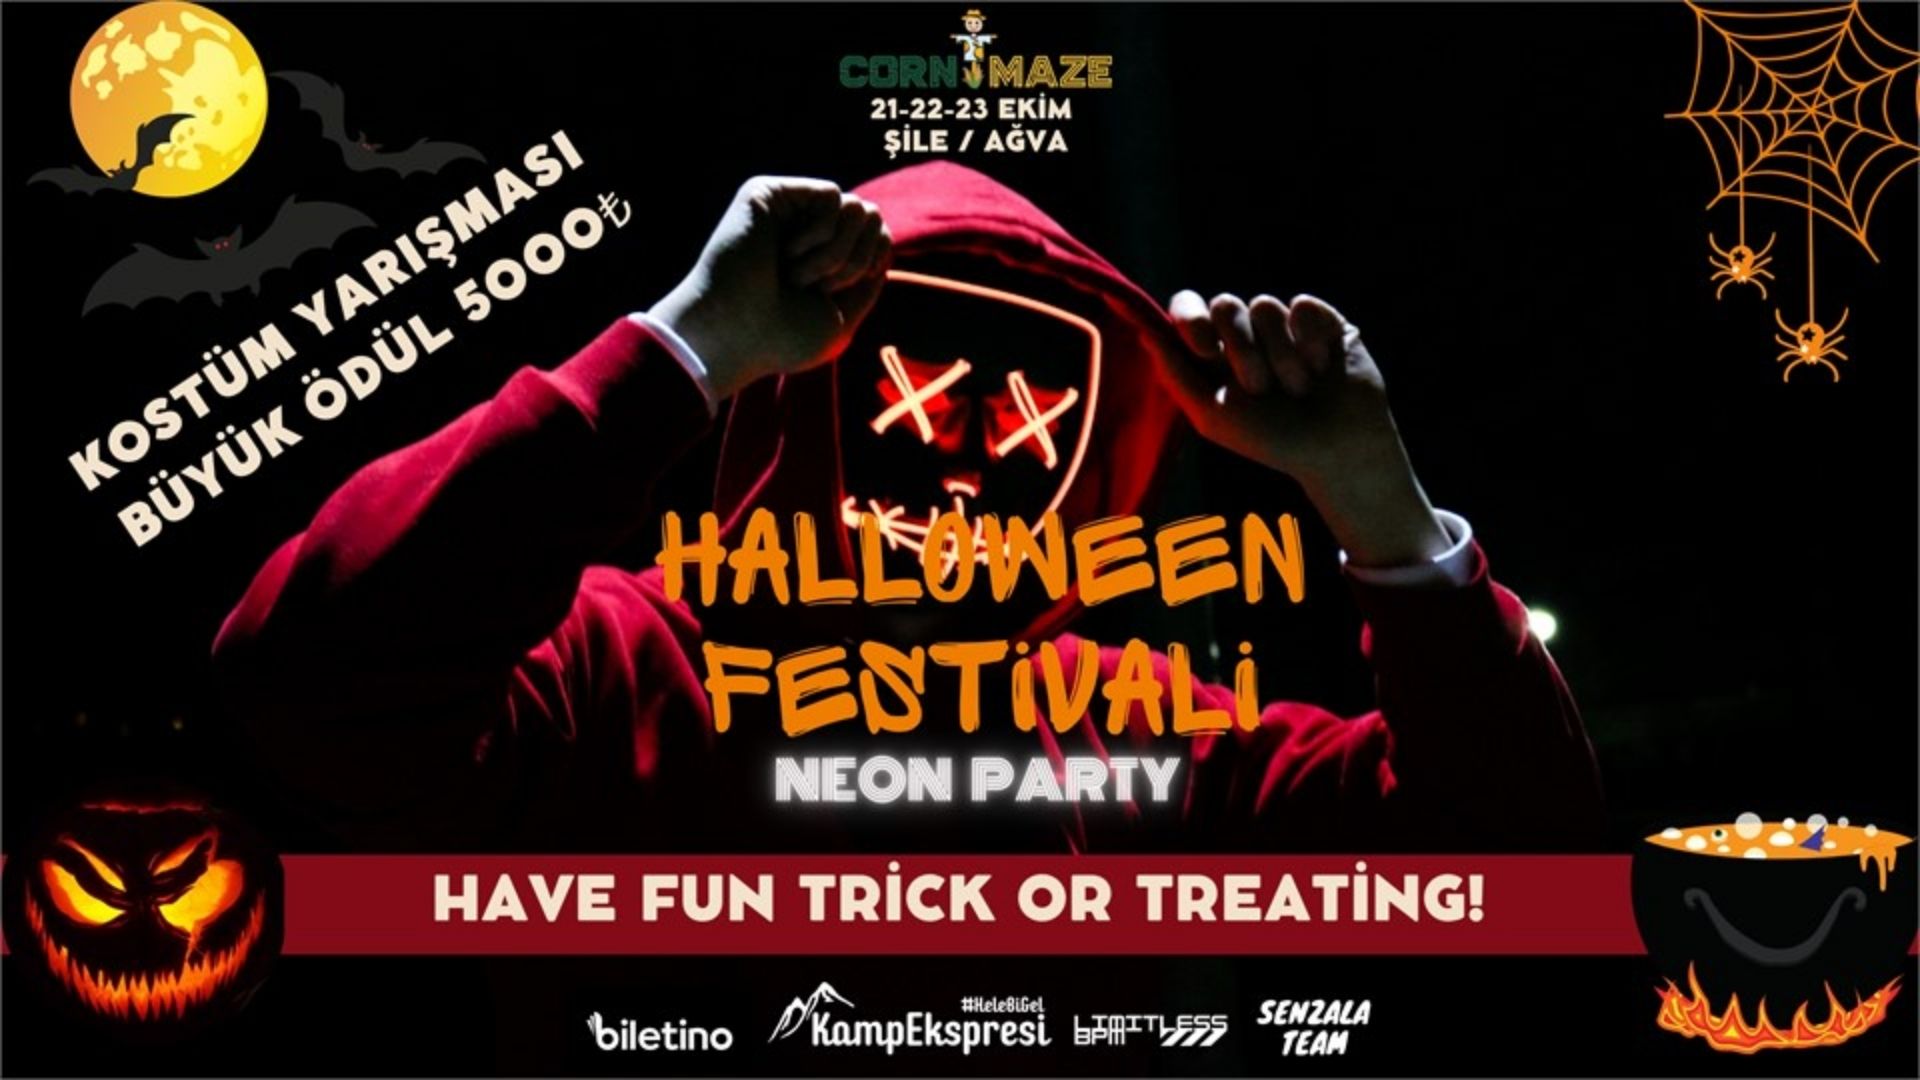 Halloween Festivali 2022 festival